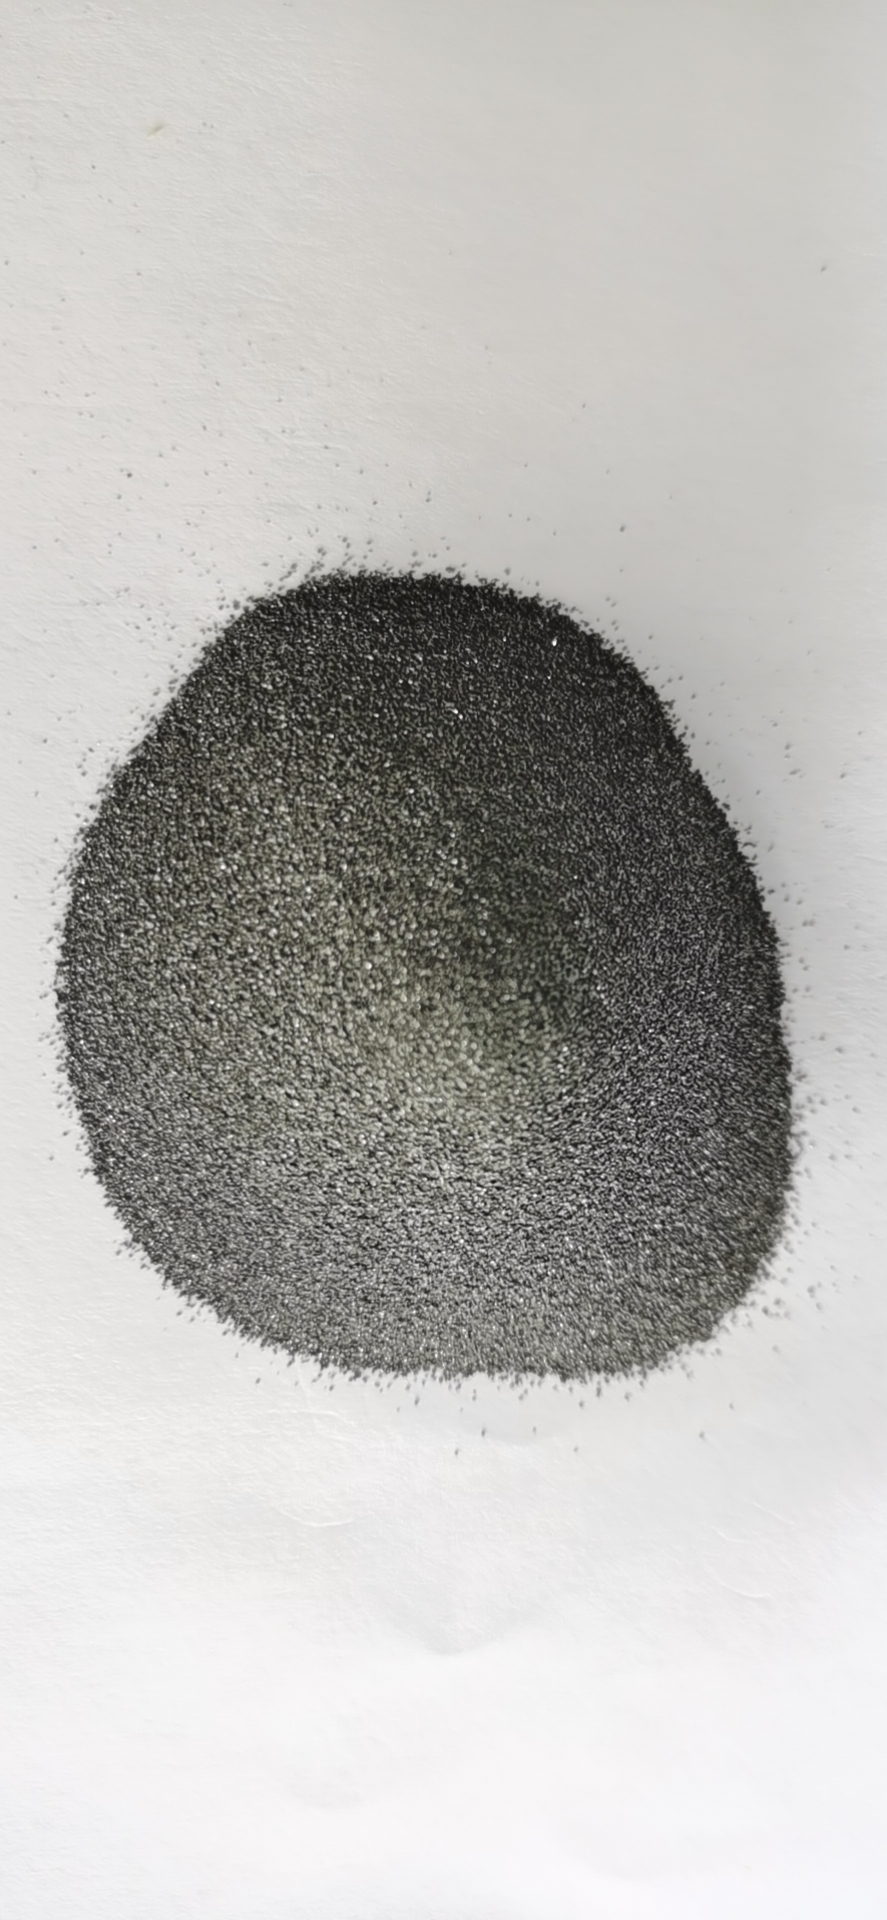 チタンカーバイド 炭化チタン粉末 - FTiC-3 